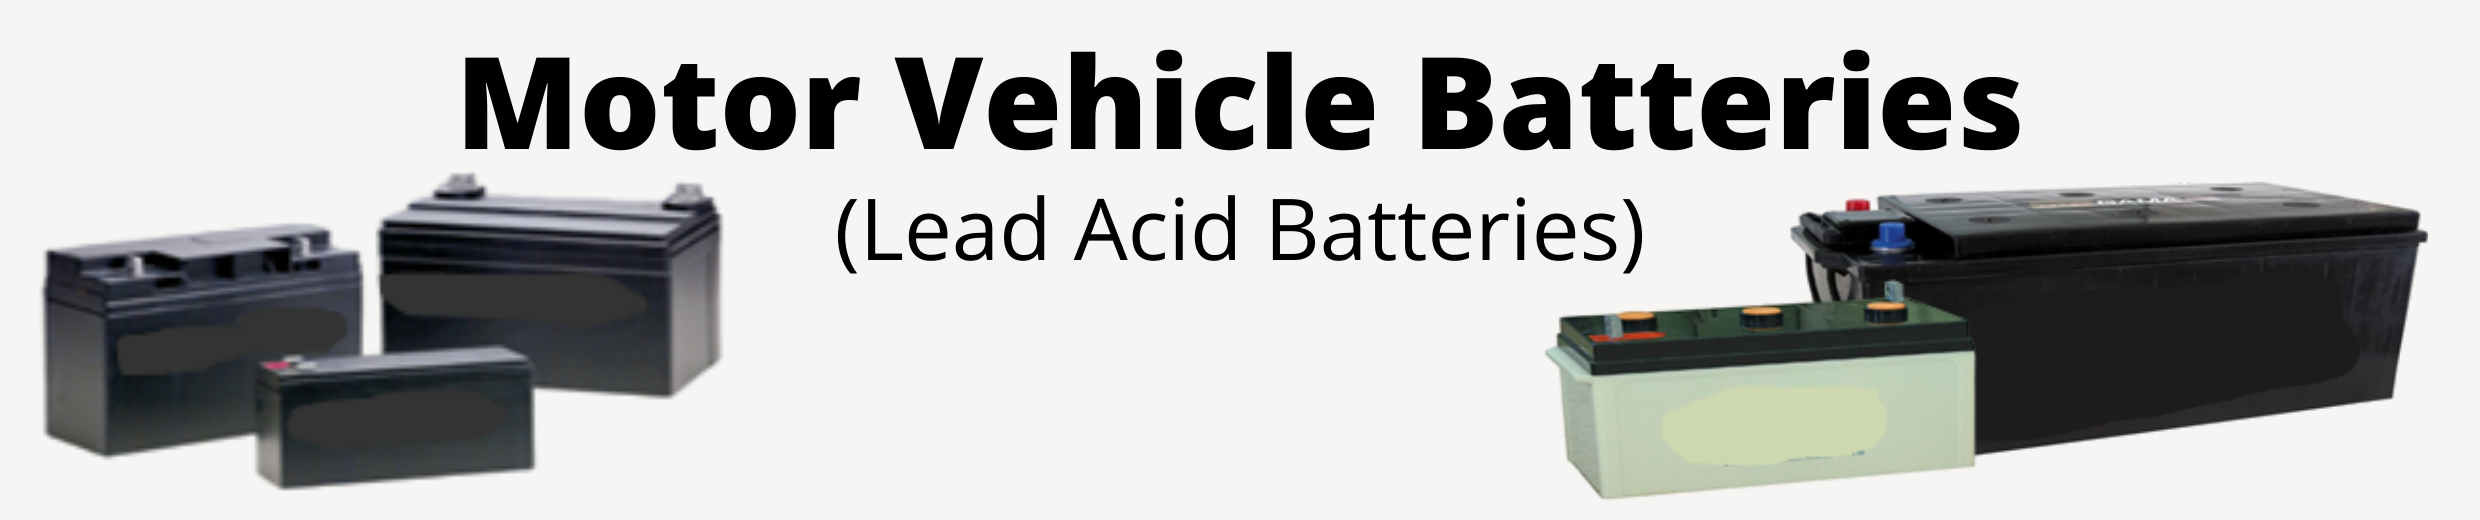 Batteries, Motor Vehicle (Lead Acid)